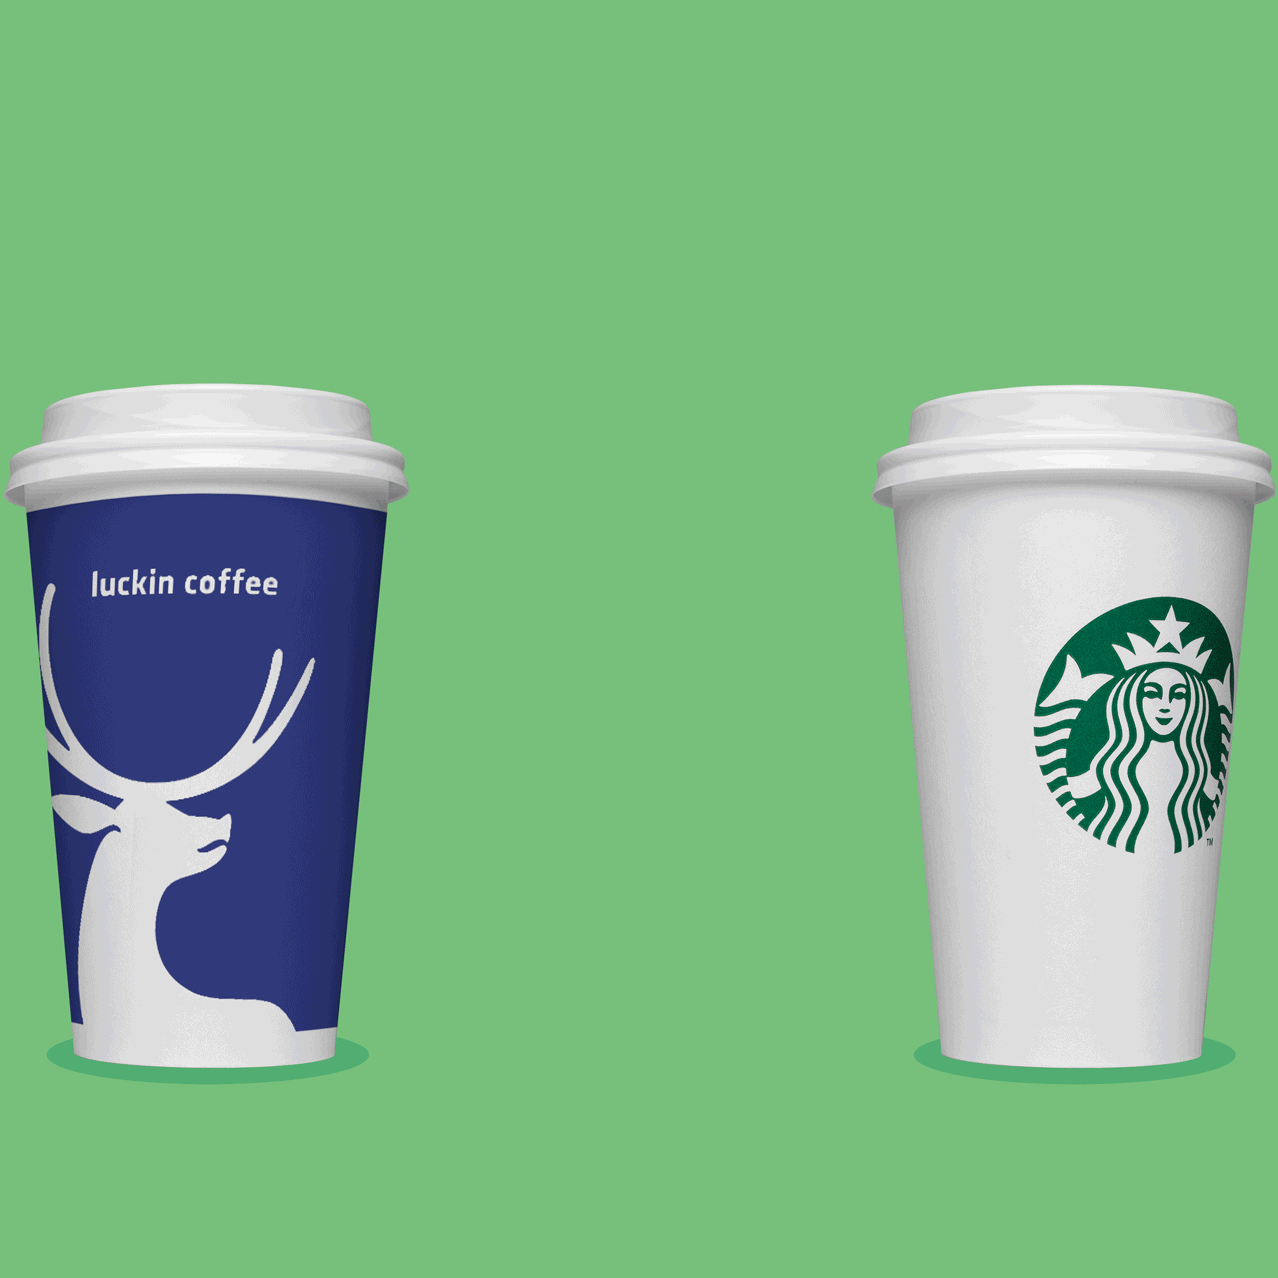 Thảm hoạ Starbucks: Bị mất ngôi vương vào tay 1 chuỗi từng phá sản, những ly cà phê giá 100  nghìn đồng dần thất sủng vì đắt đỏ